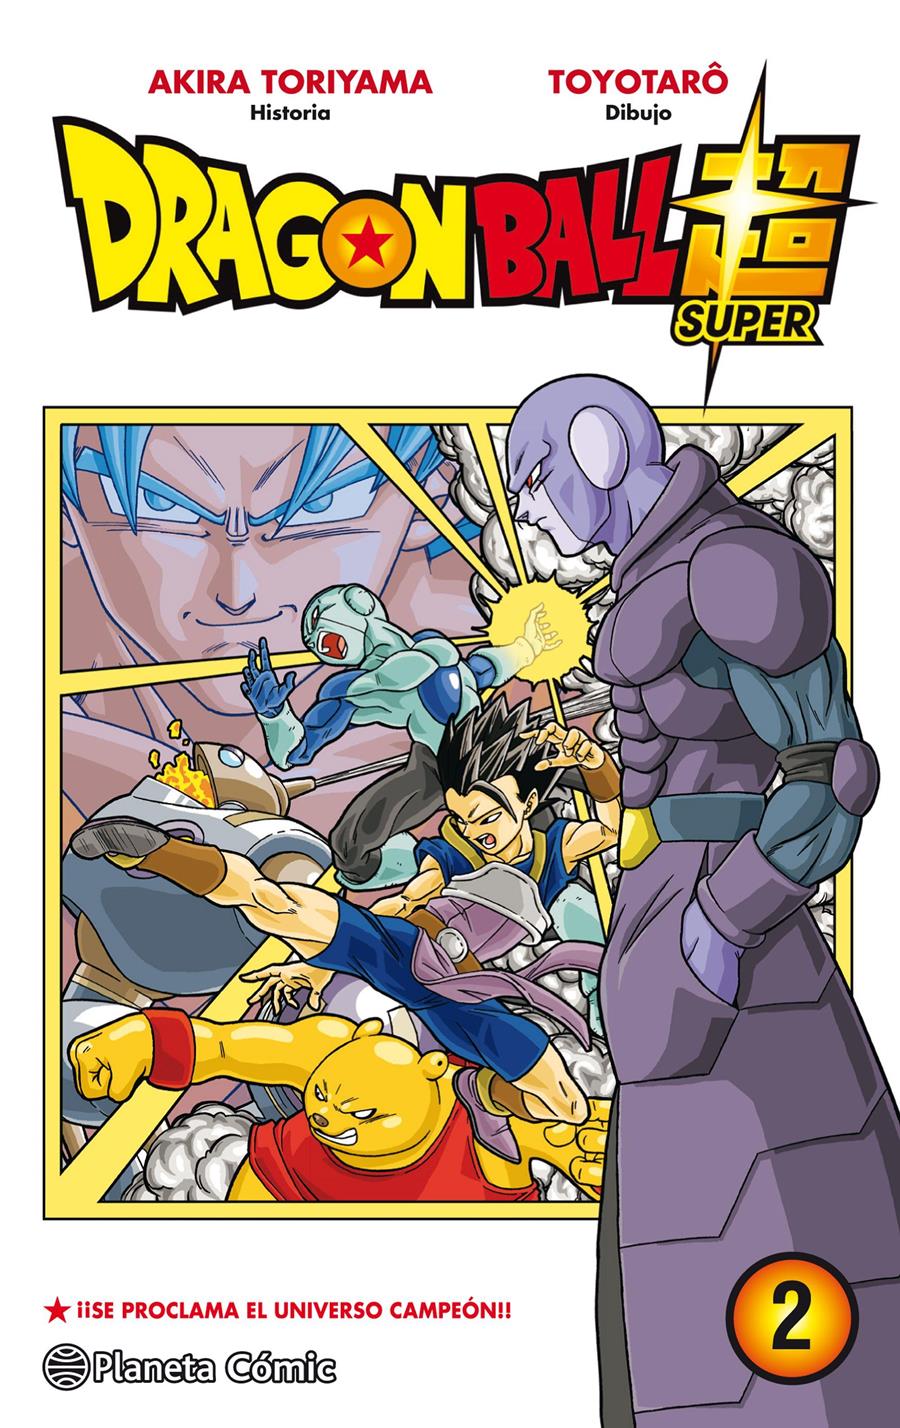 Dragon Ball Super nº 02 | N10182-PLA08 | Akira Toriyama, Toyotaro | Terra de Còmic - Tu tienda de cómics online especializada en cómics, manga y merchandising